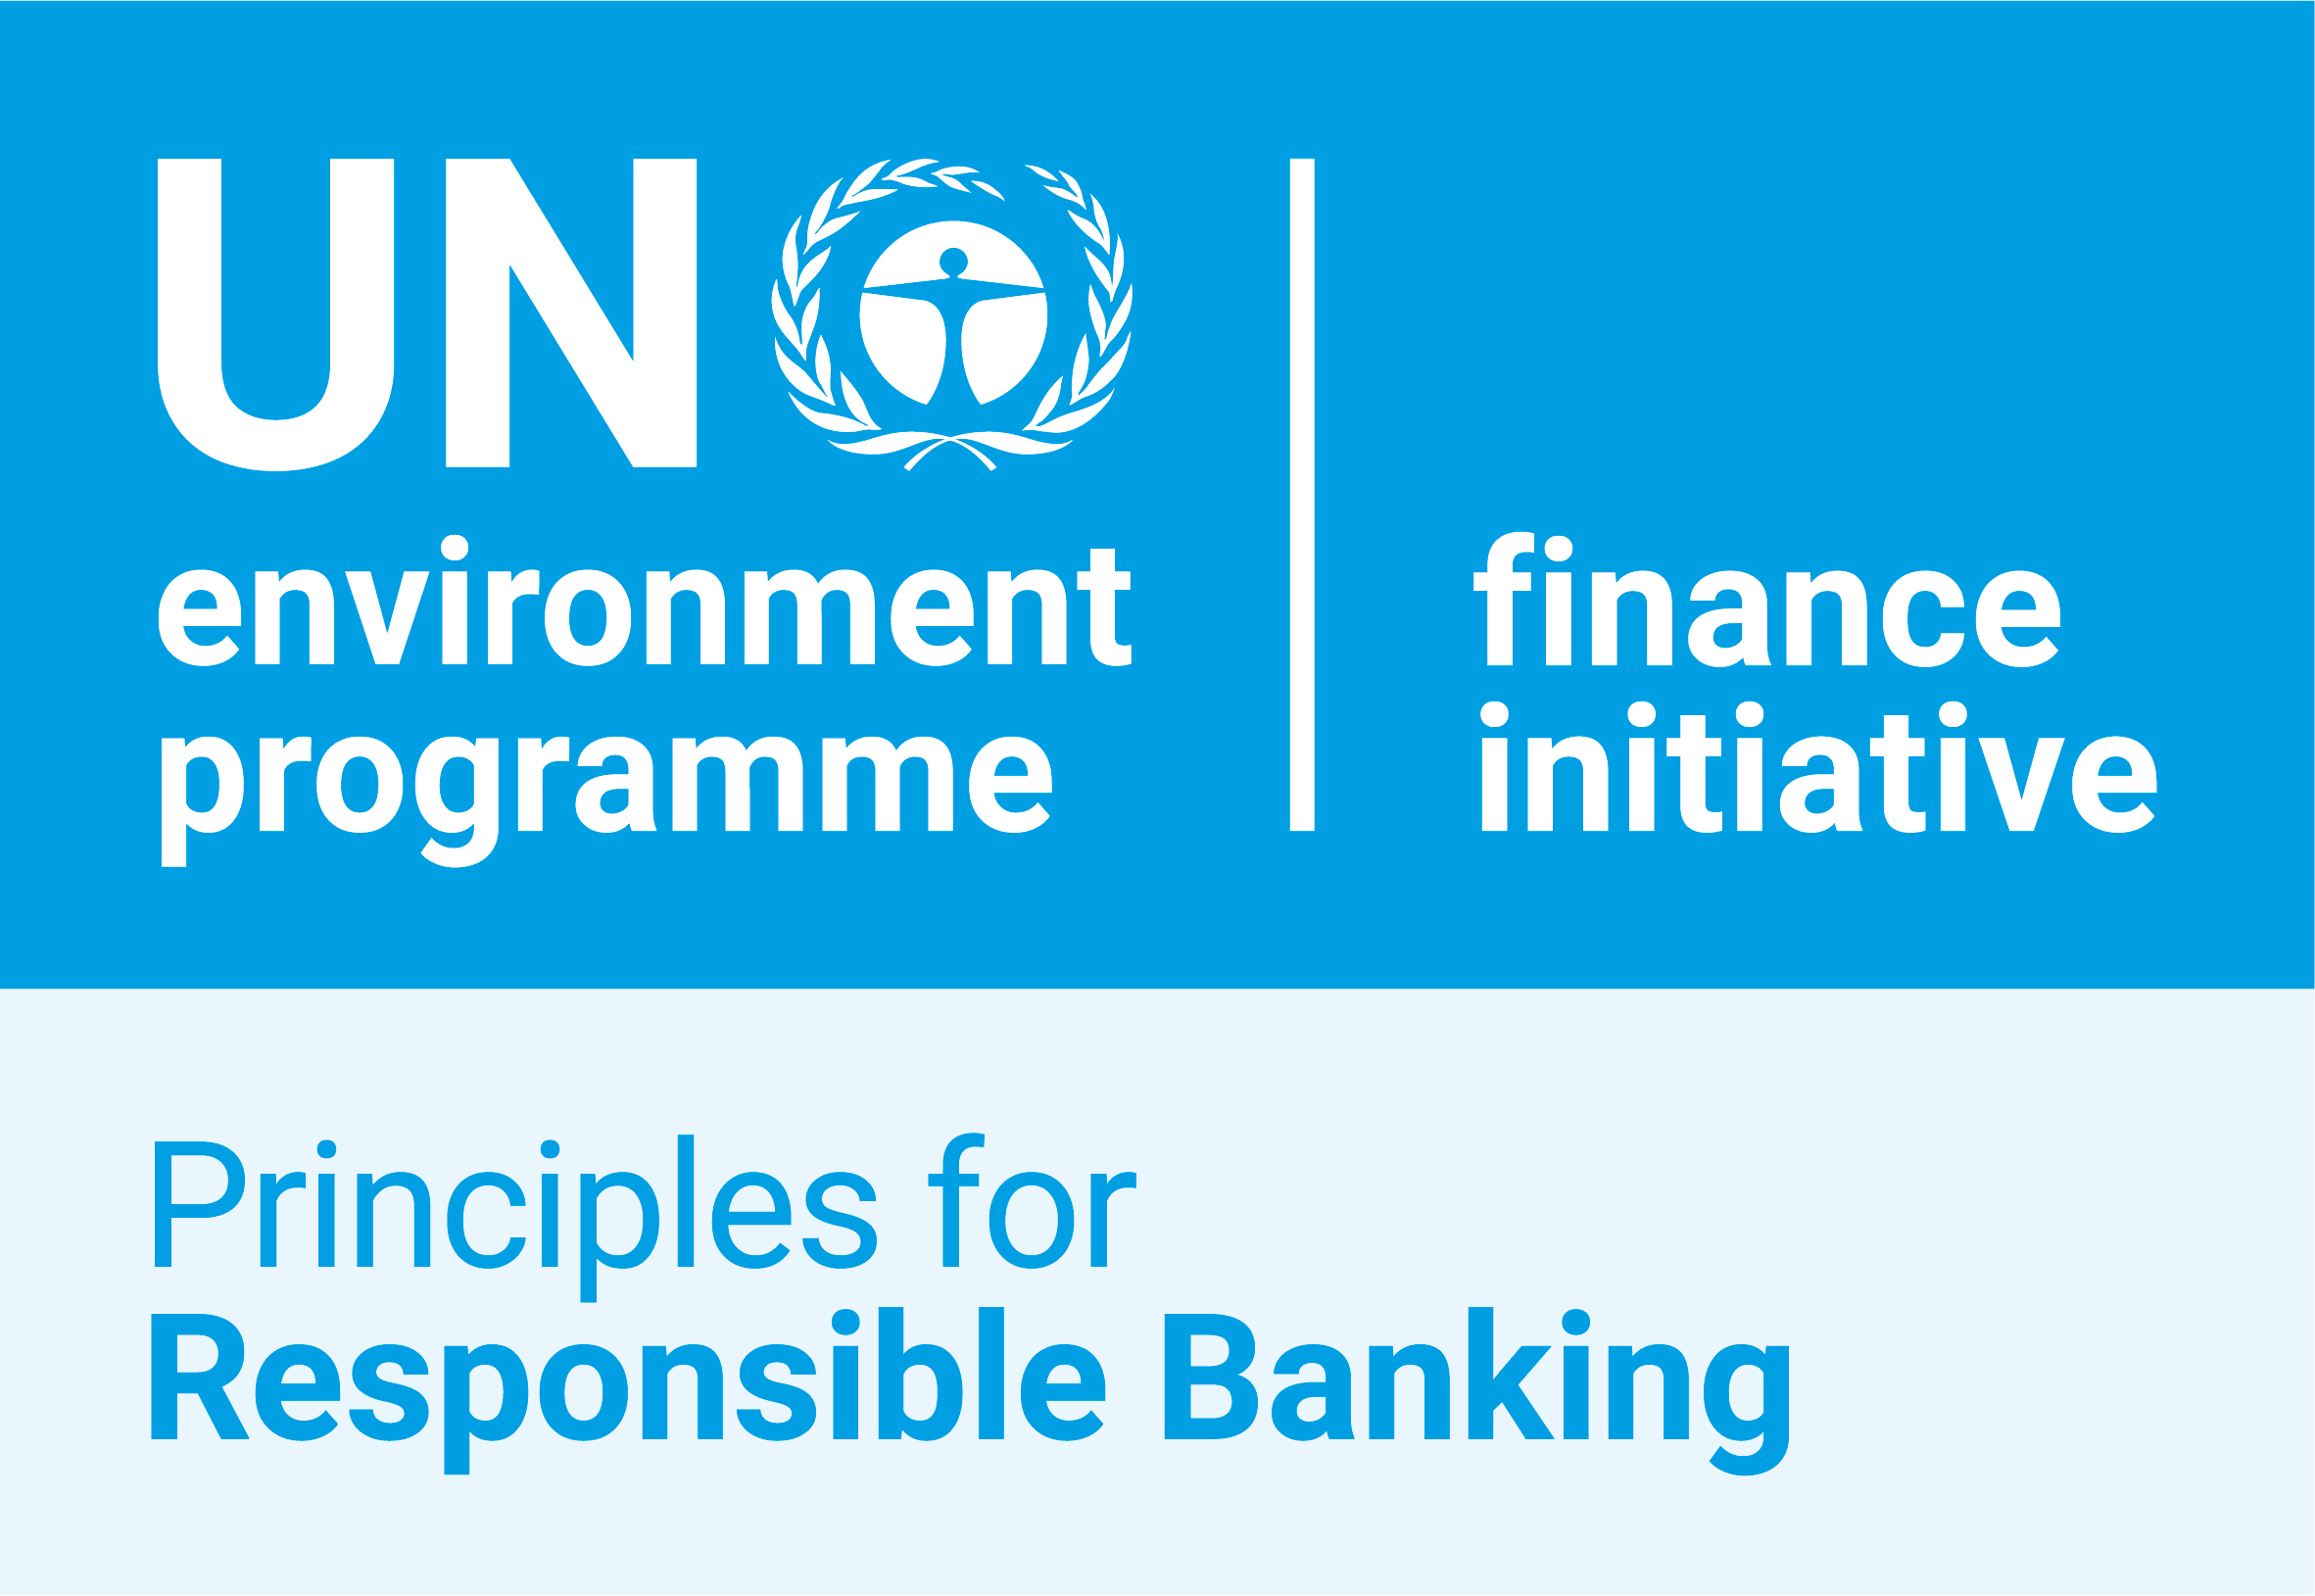 UN environment programme logo